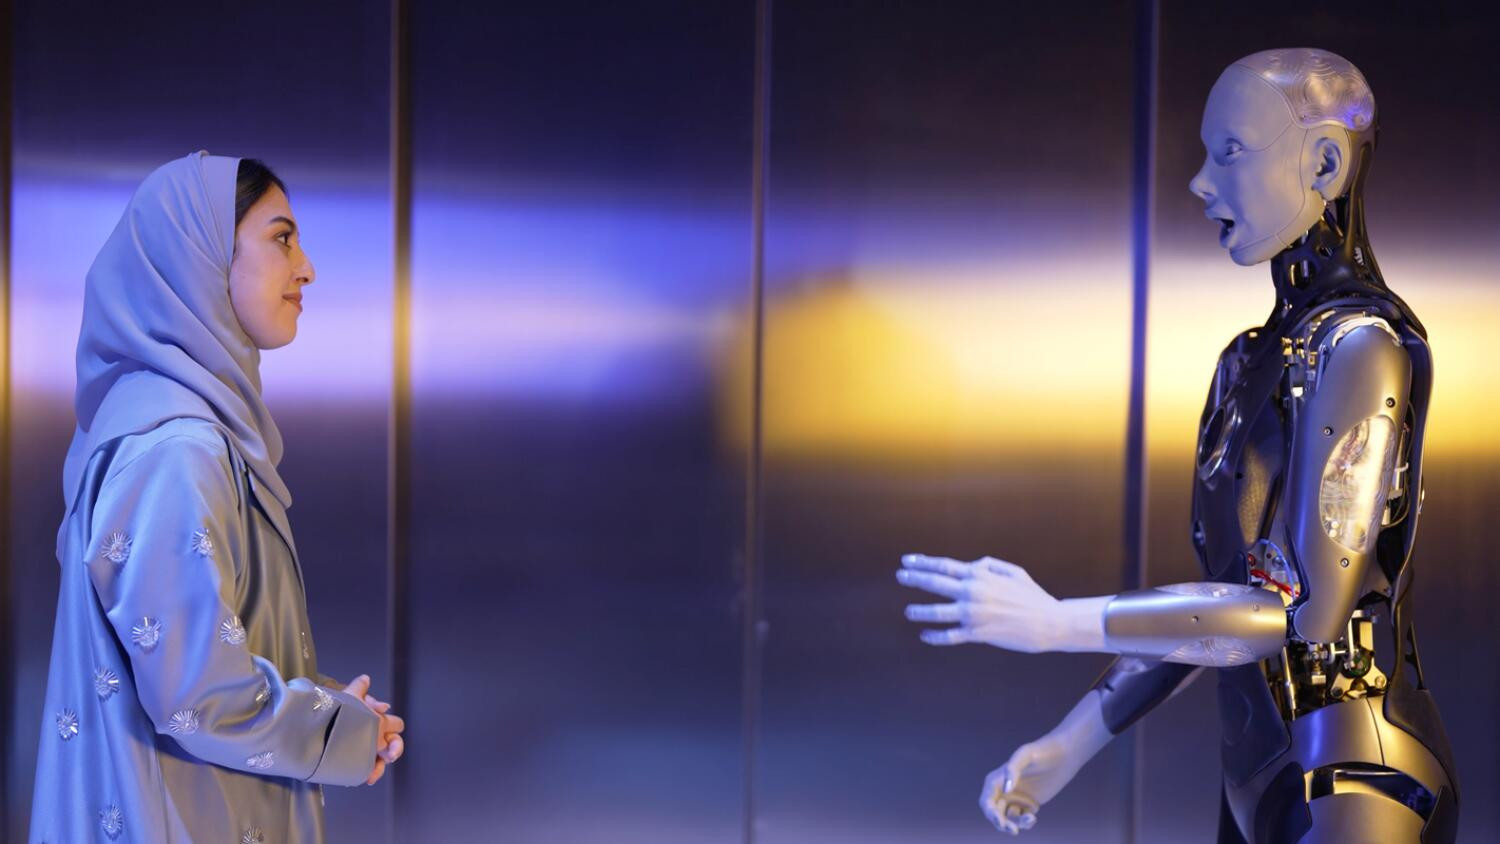 Bảo tàng Tương lai tại Dubai sử dụng robot hình người để đón khách tham quan - Ảnh 1.